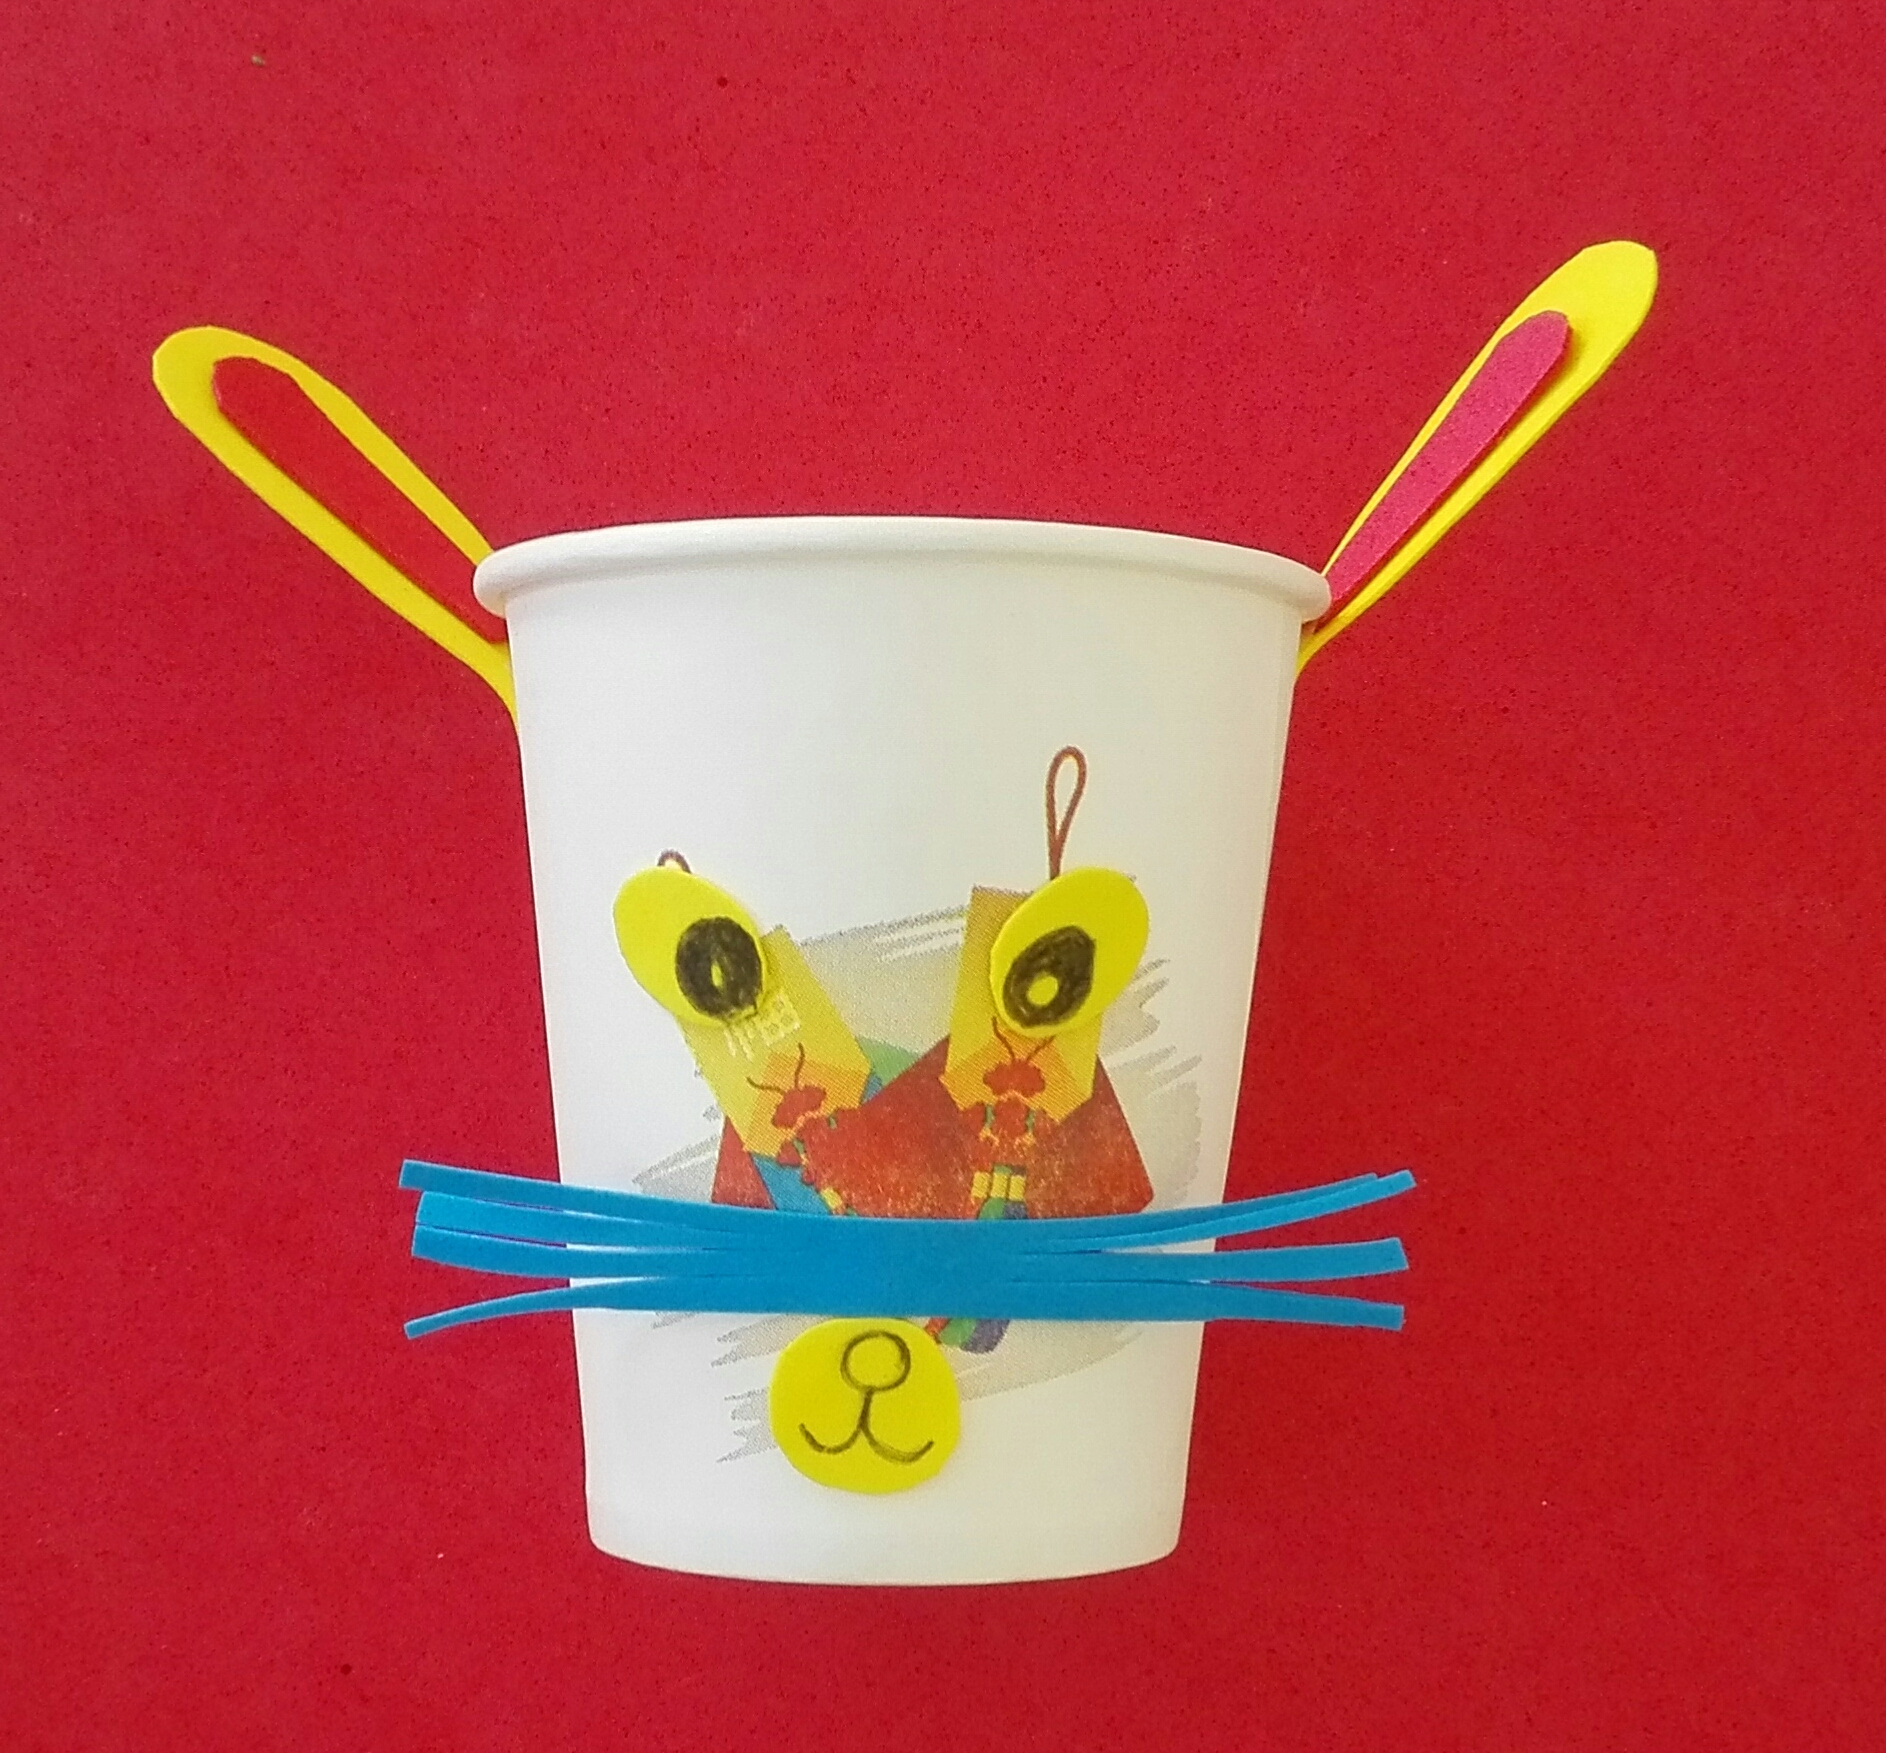 100个简单科学小制作小发明 一次性纸杯做动物投影玩具教程💛巧艺网